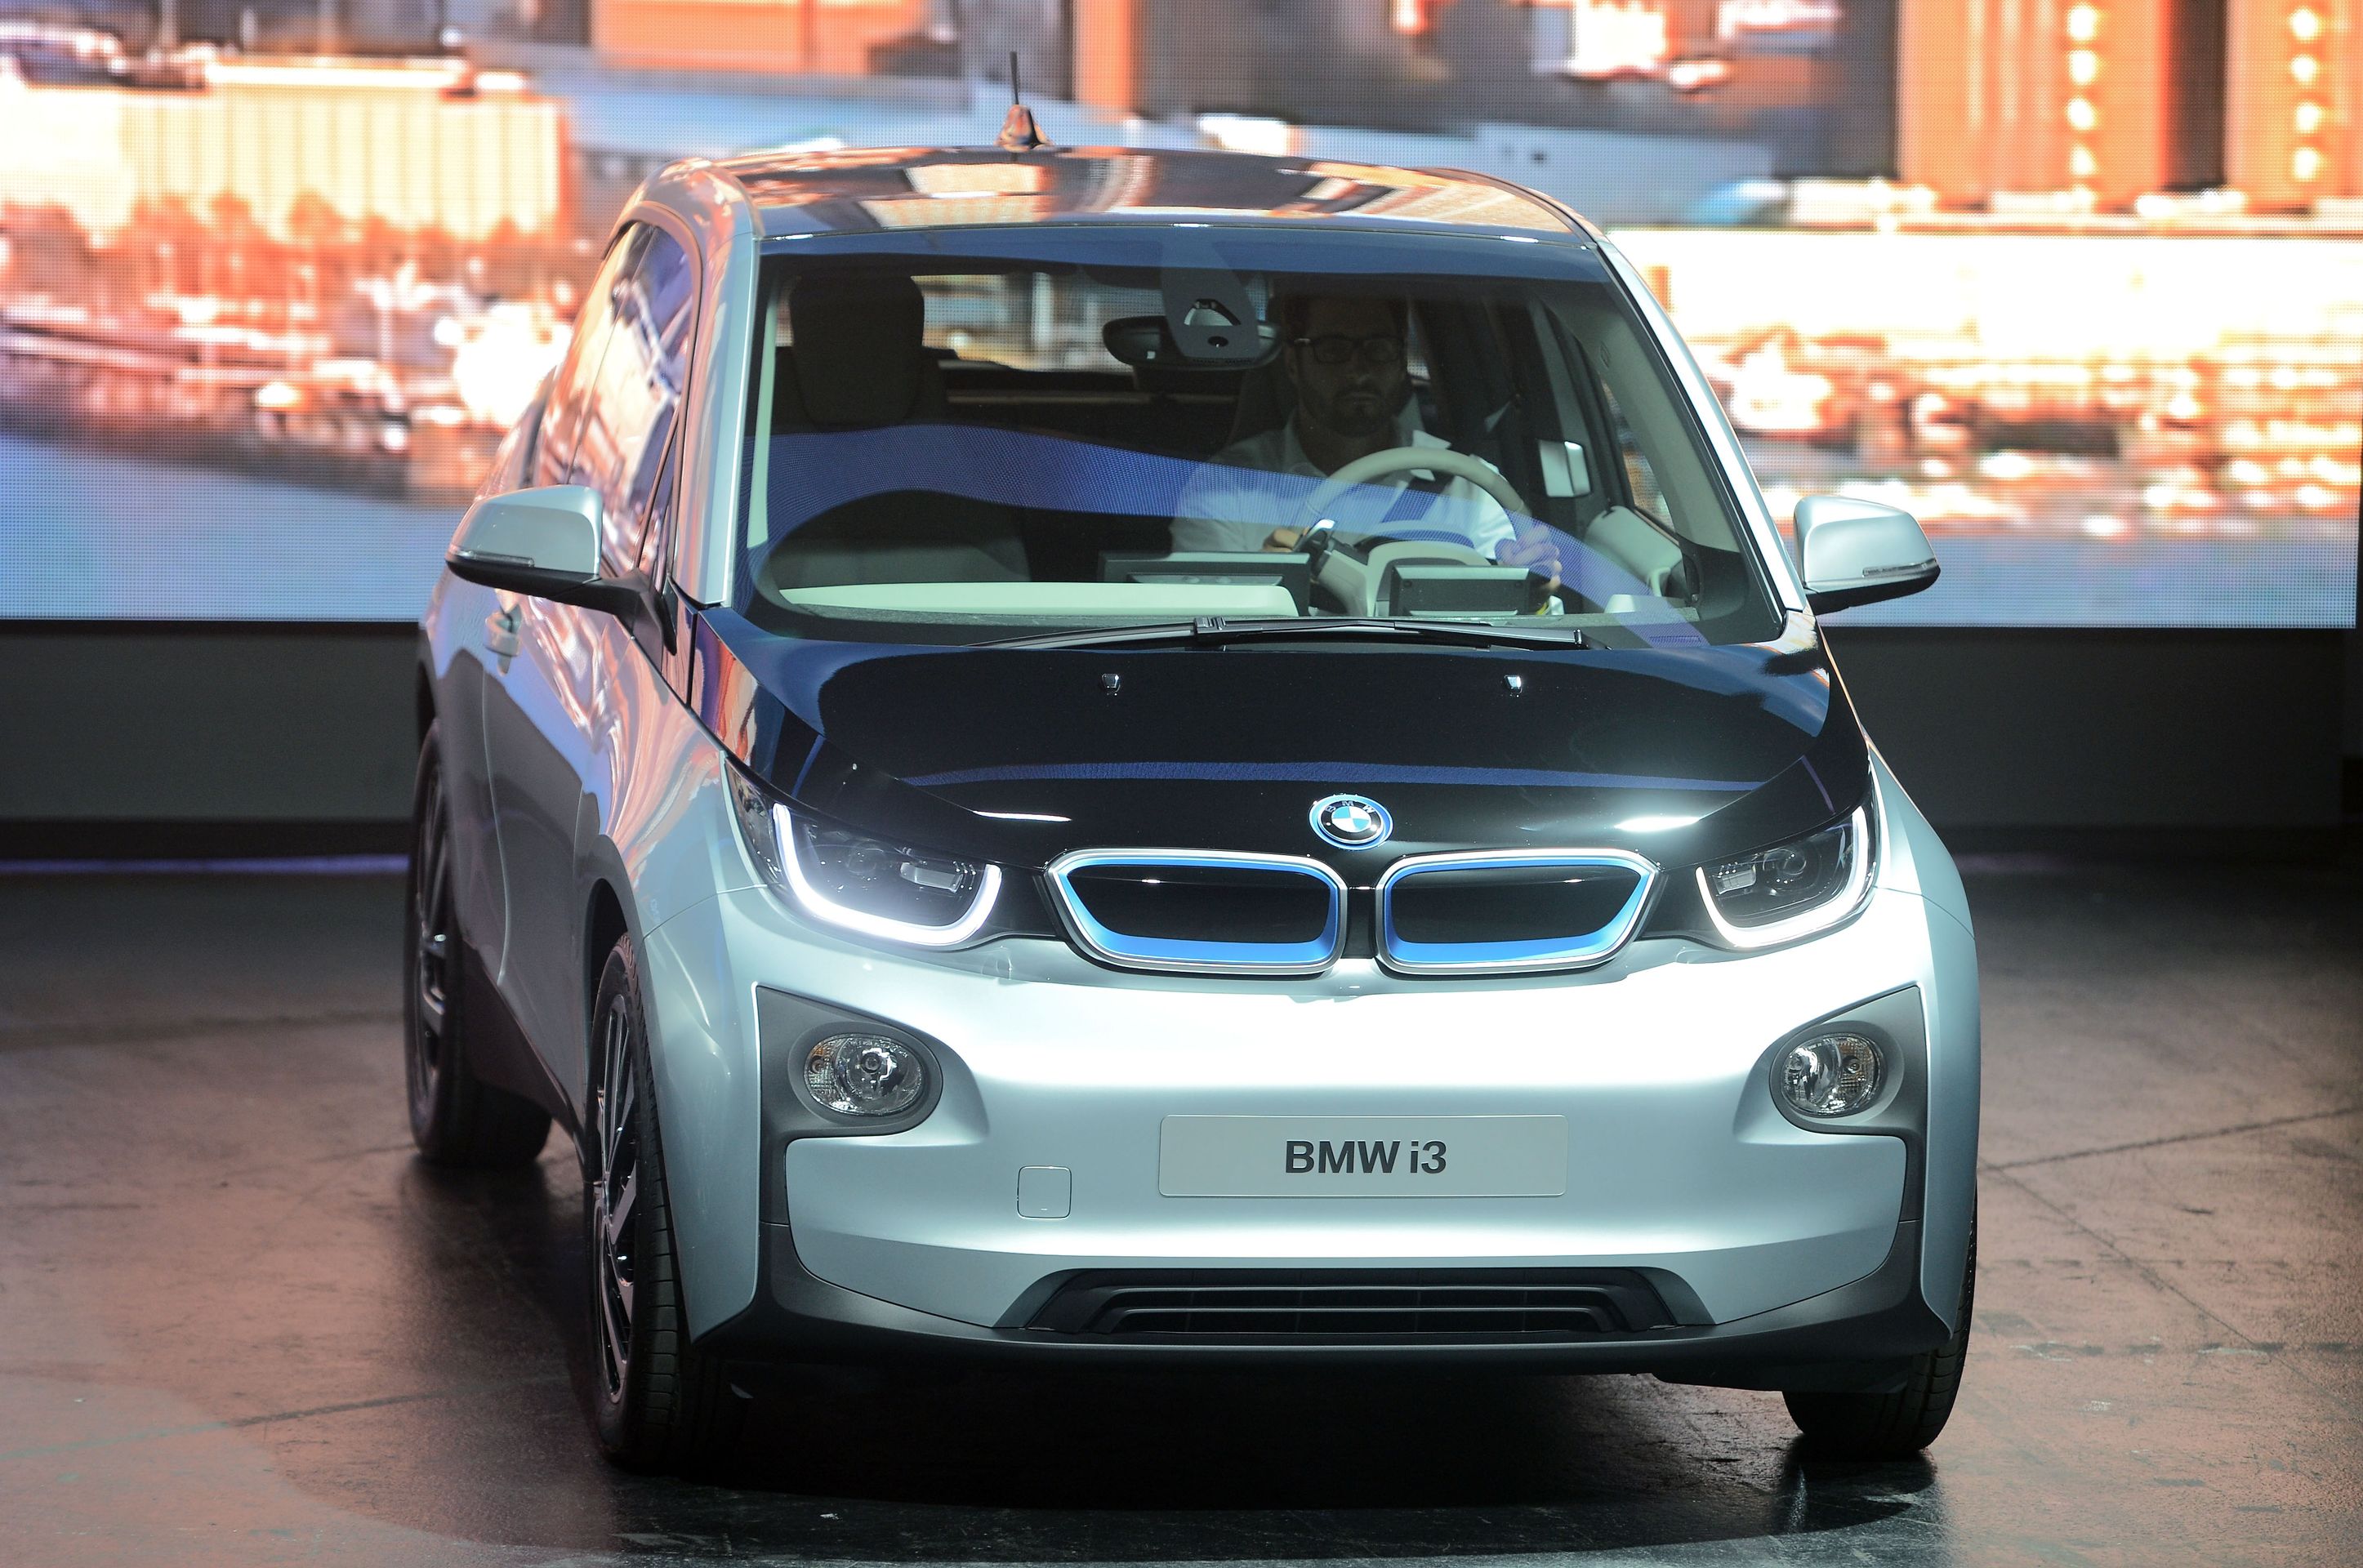 BMW i3 - GALERIE: Auta představená na autosalonu ve Frankfurtu (19/20)